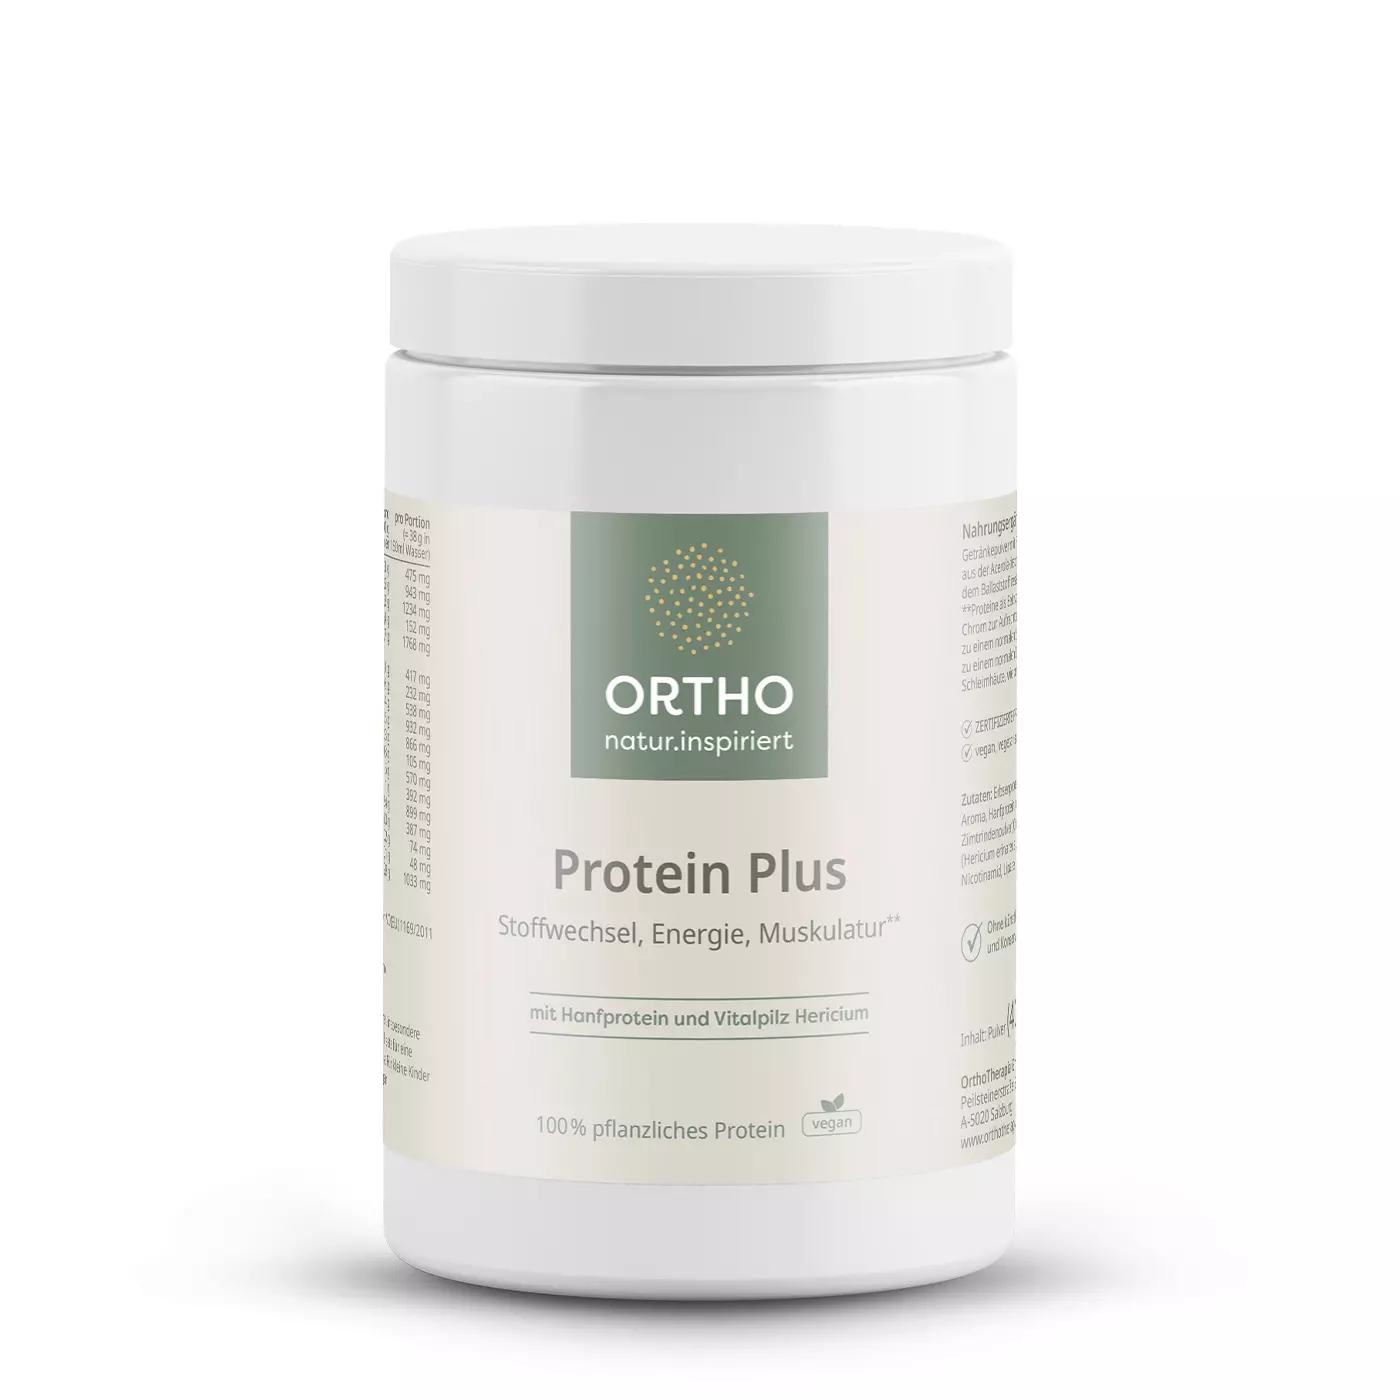 OrthoTherapia Protein Plus